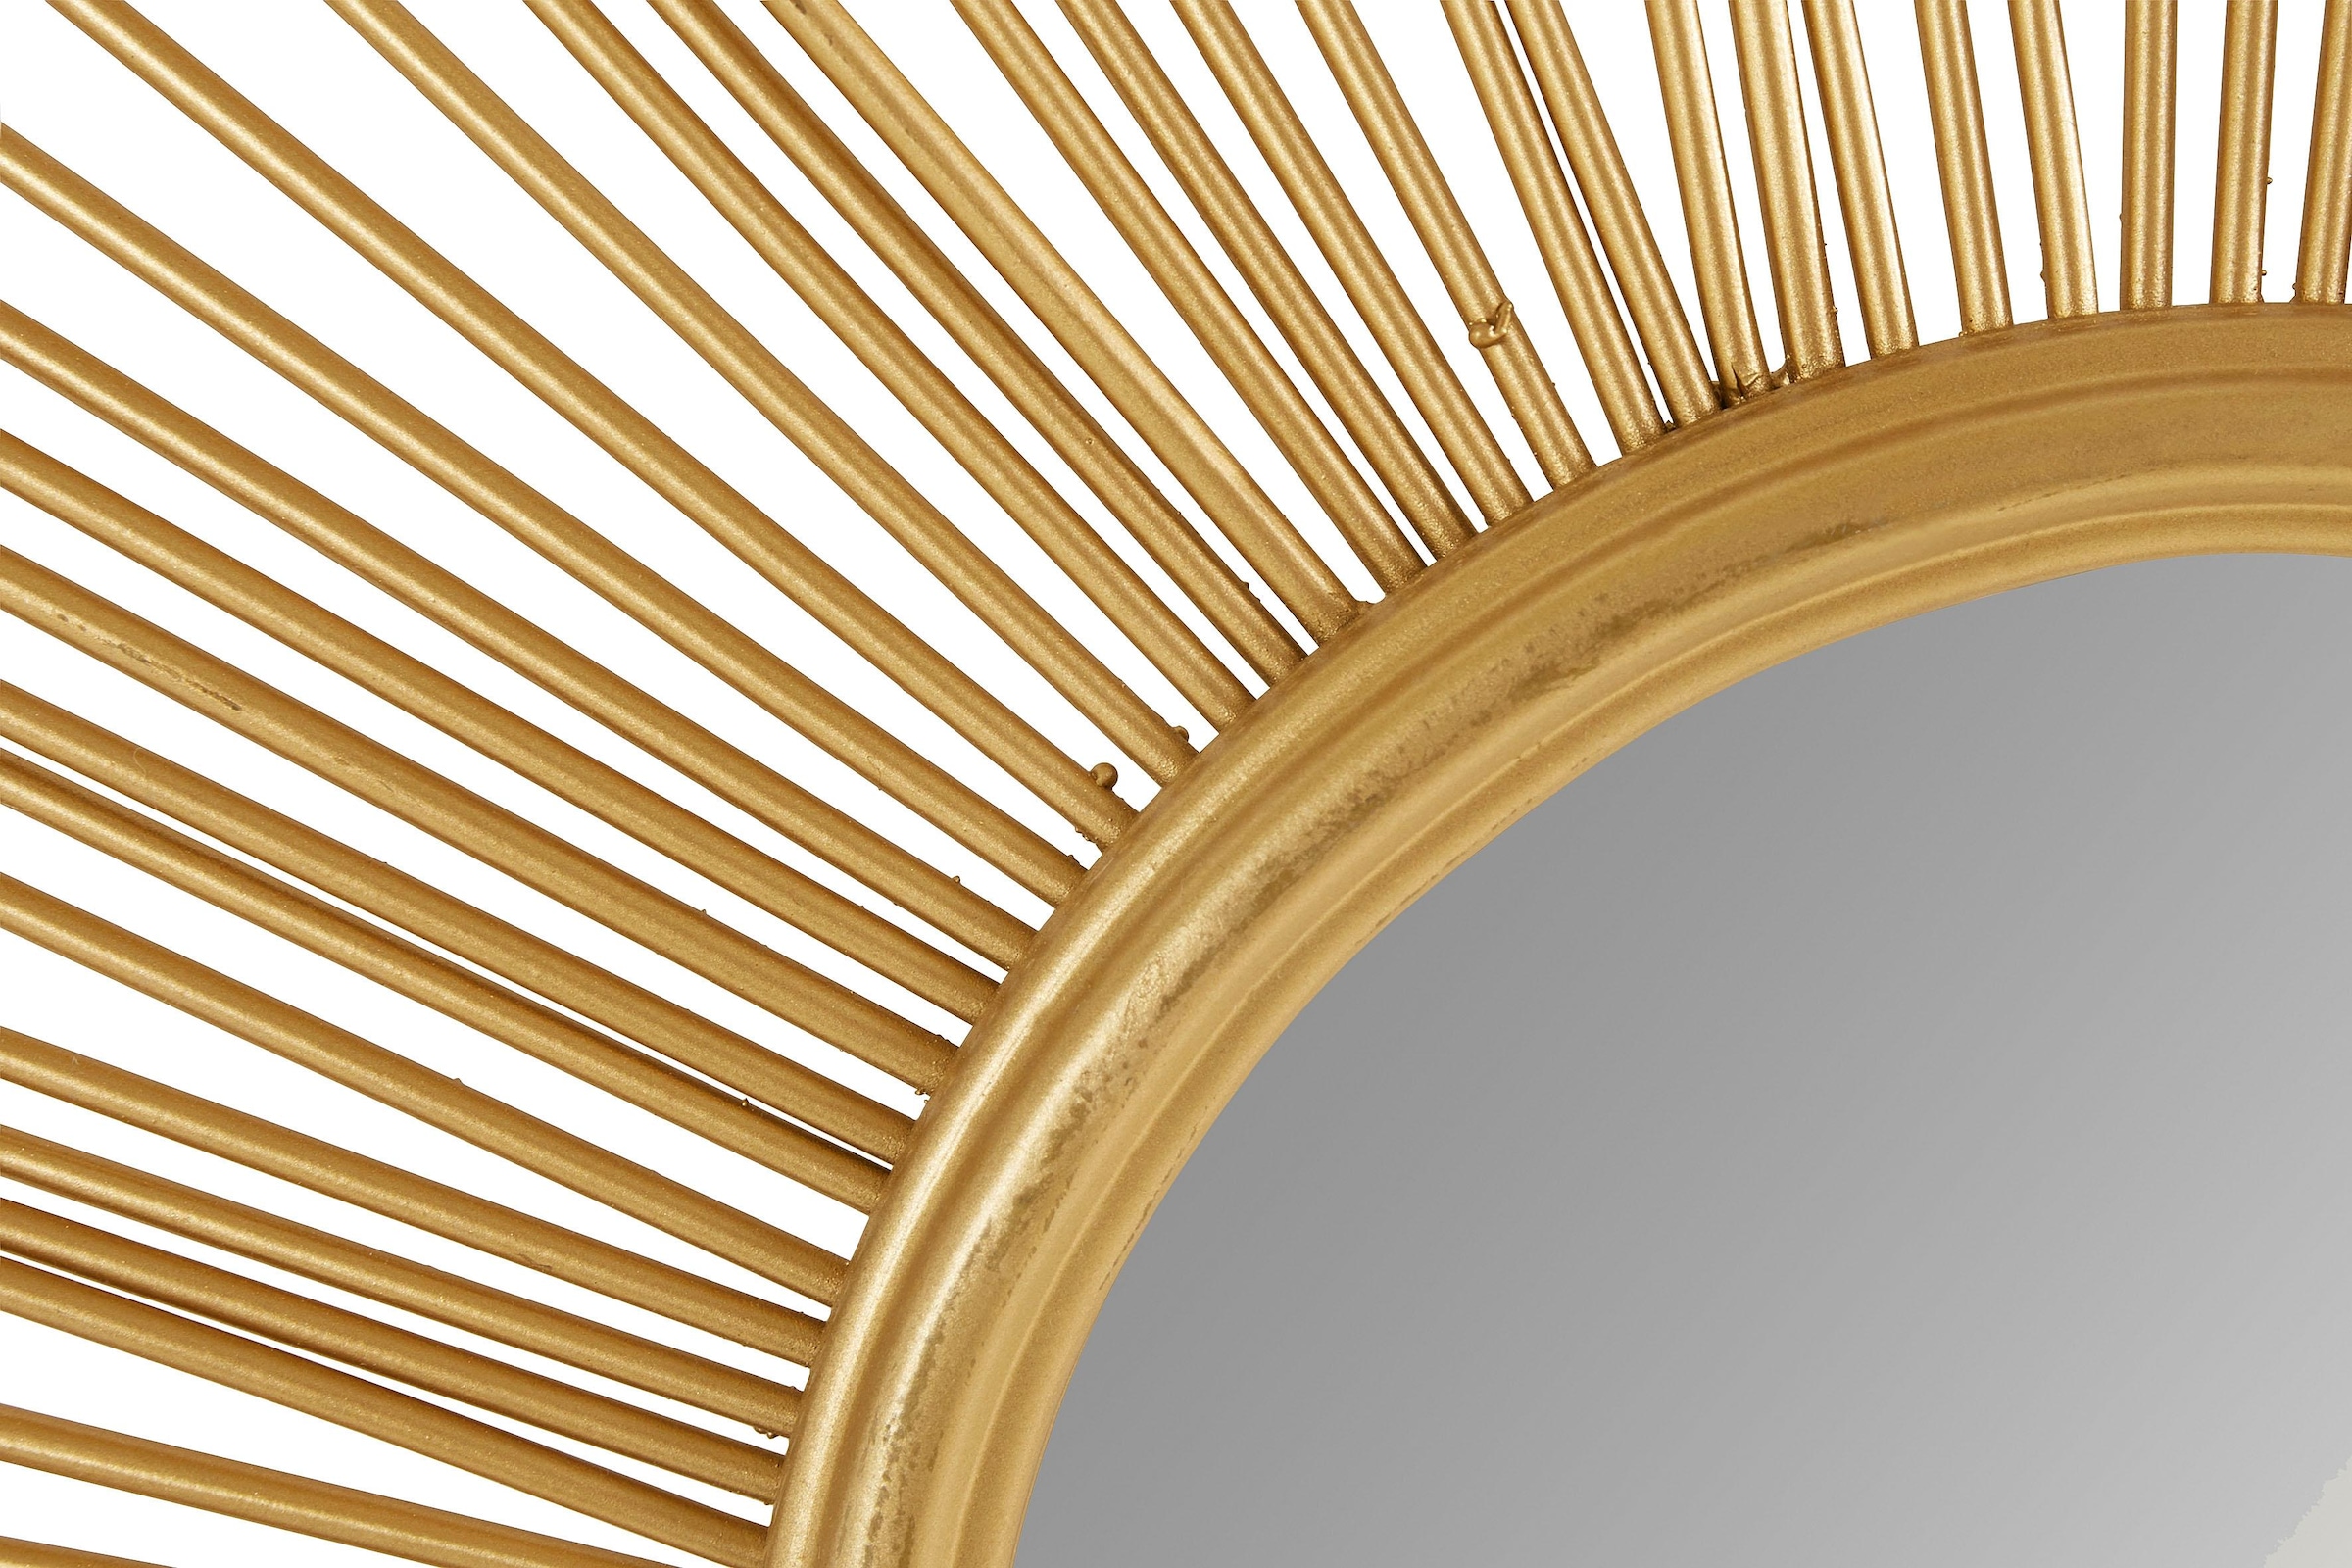 Leonique Dekospiegel »Sonne, gold«, Wandspiegel, Wanddeko, rund, Ø 104 cm,  aus Metall, glamourös online kaufen | mit 3 Jahren XXL Garantie